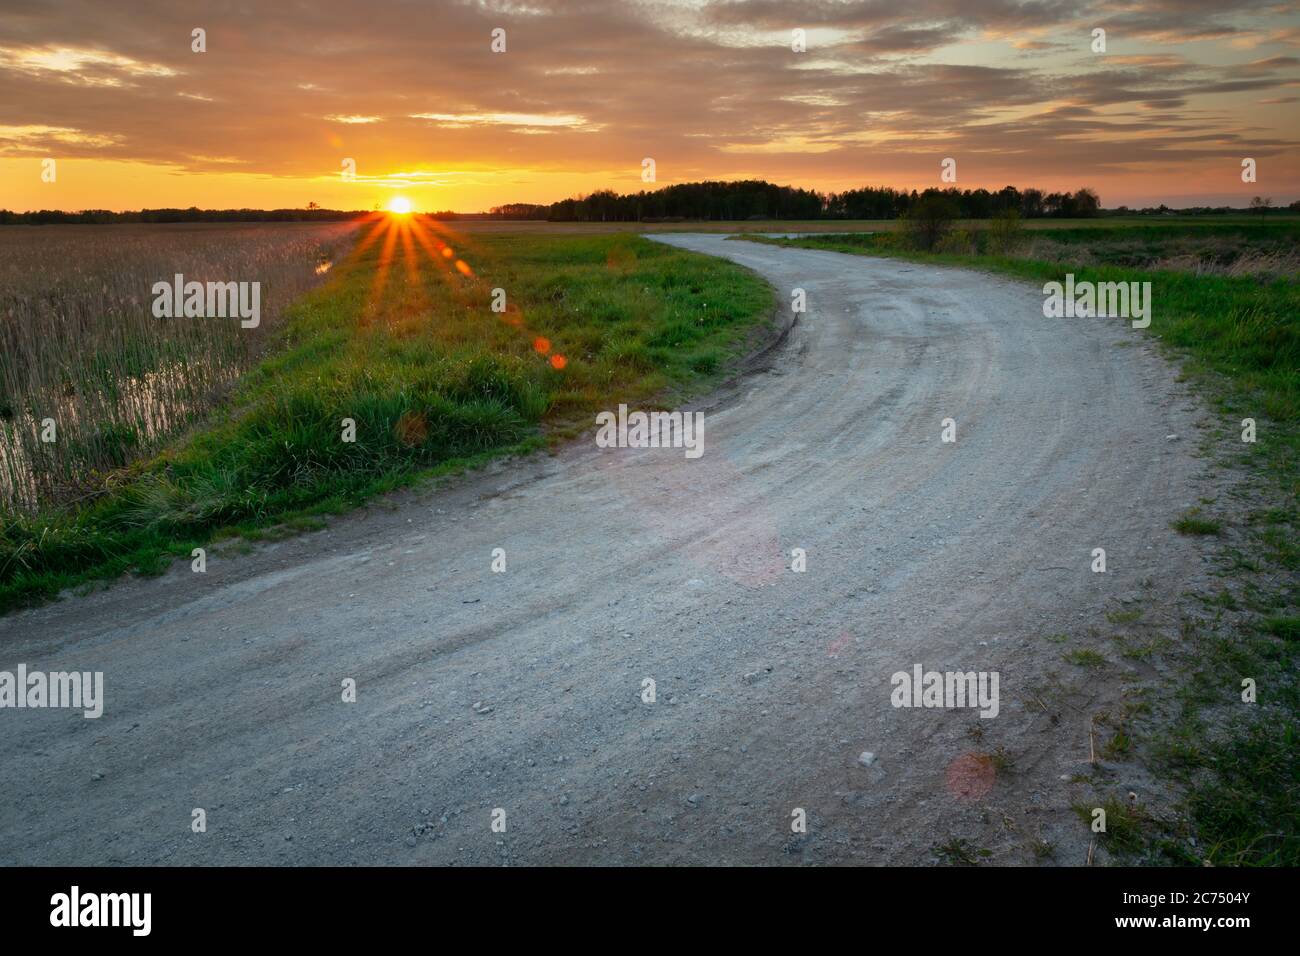 Carretera con piedras y puesta de sol, vista en la noche de primavera Foto de stock